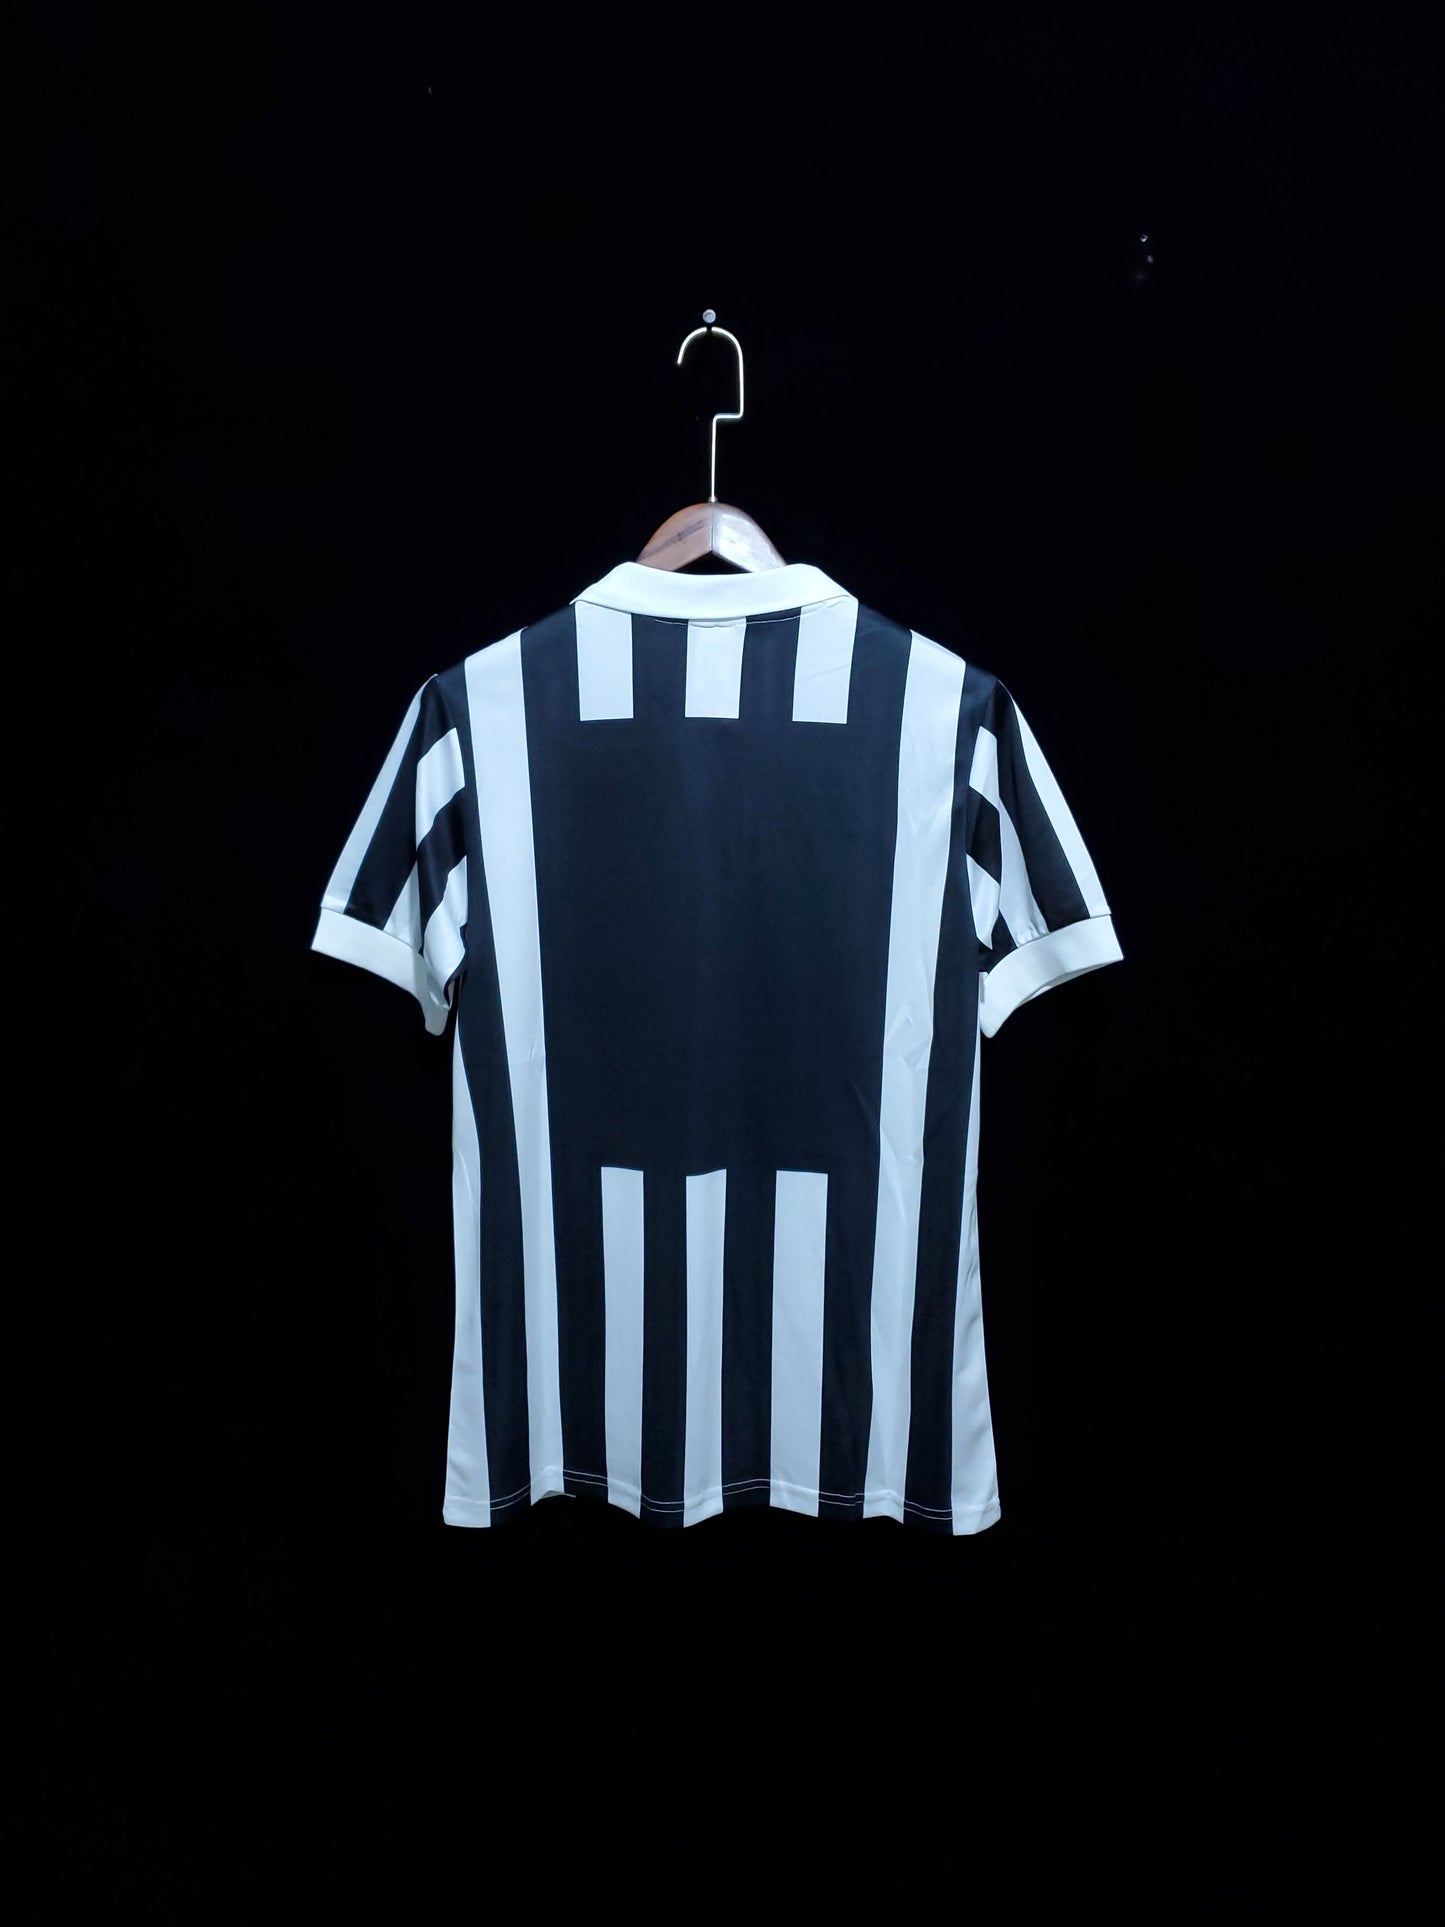 Retro Juventus 1984-1985 Home Kit